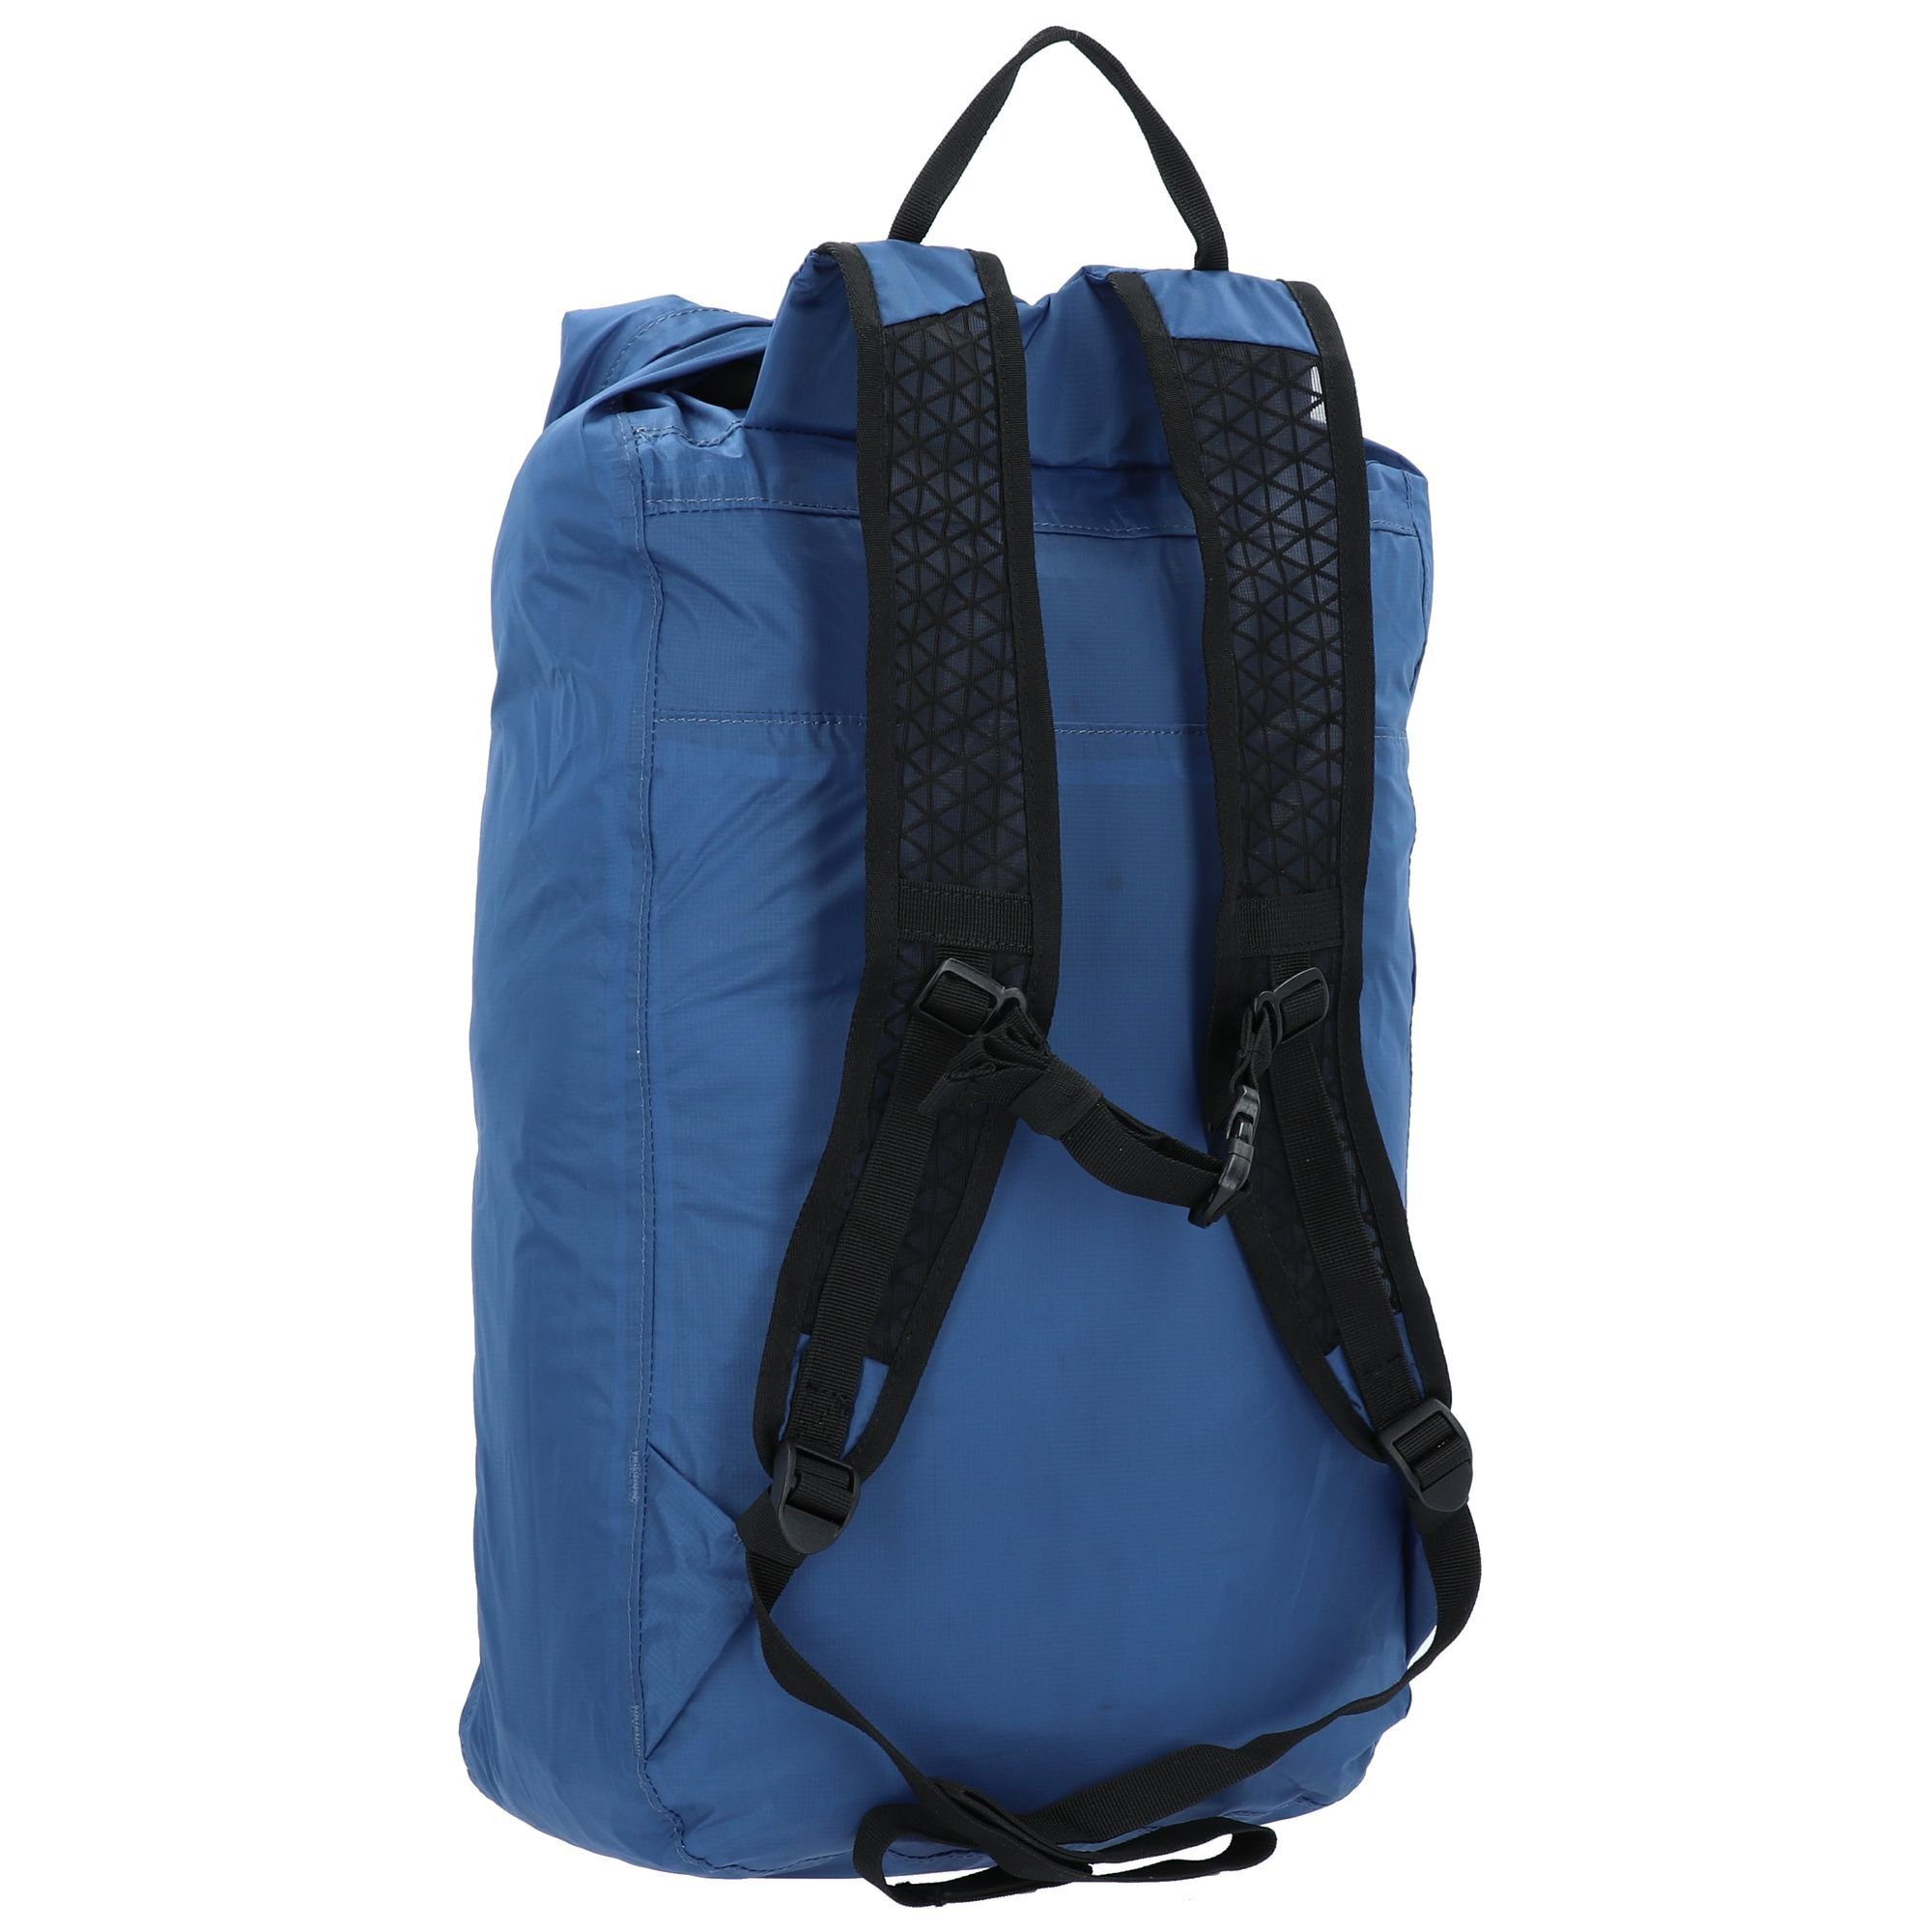 Companion Bags, Rucksack blue Nylon atlantic Cabinzero